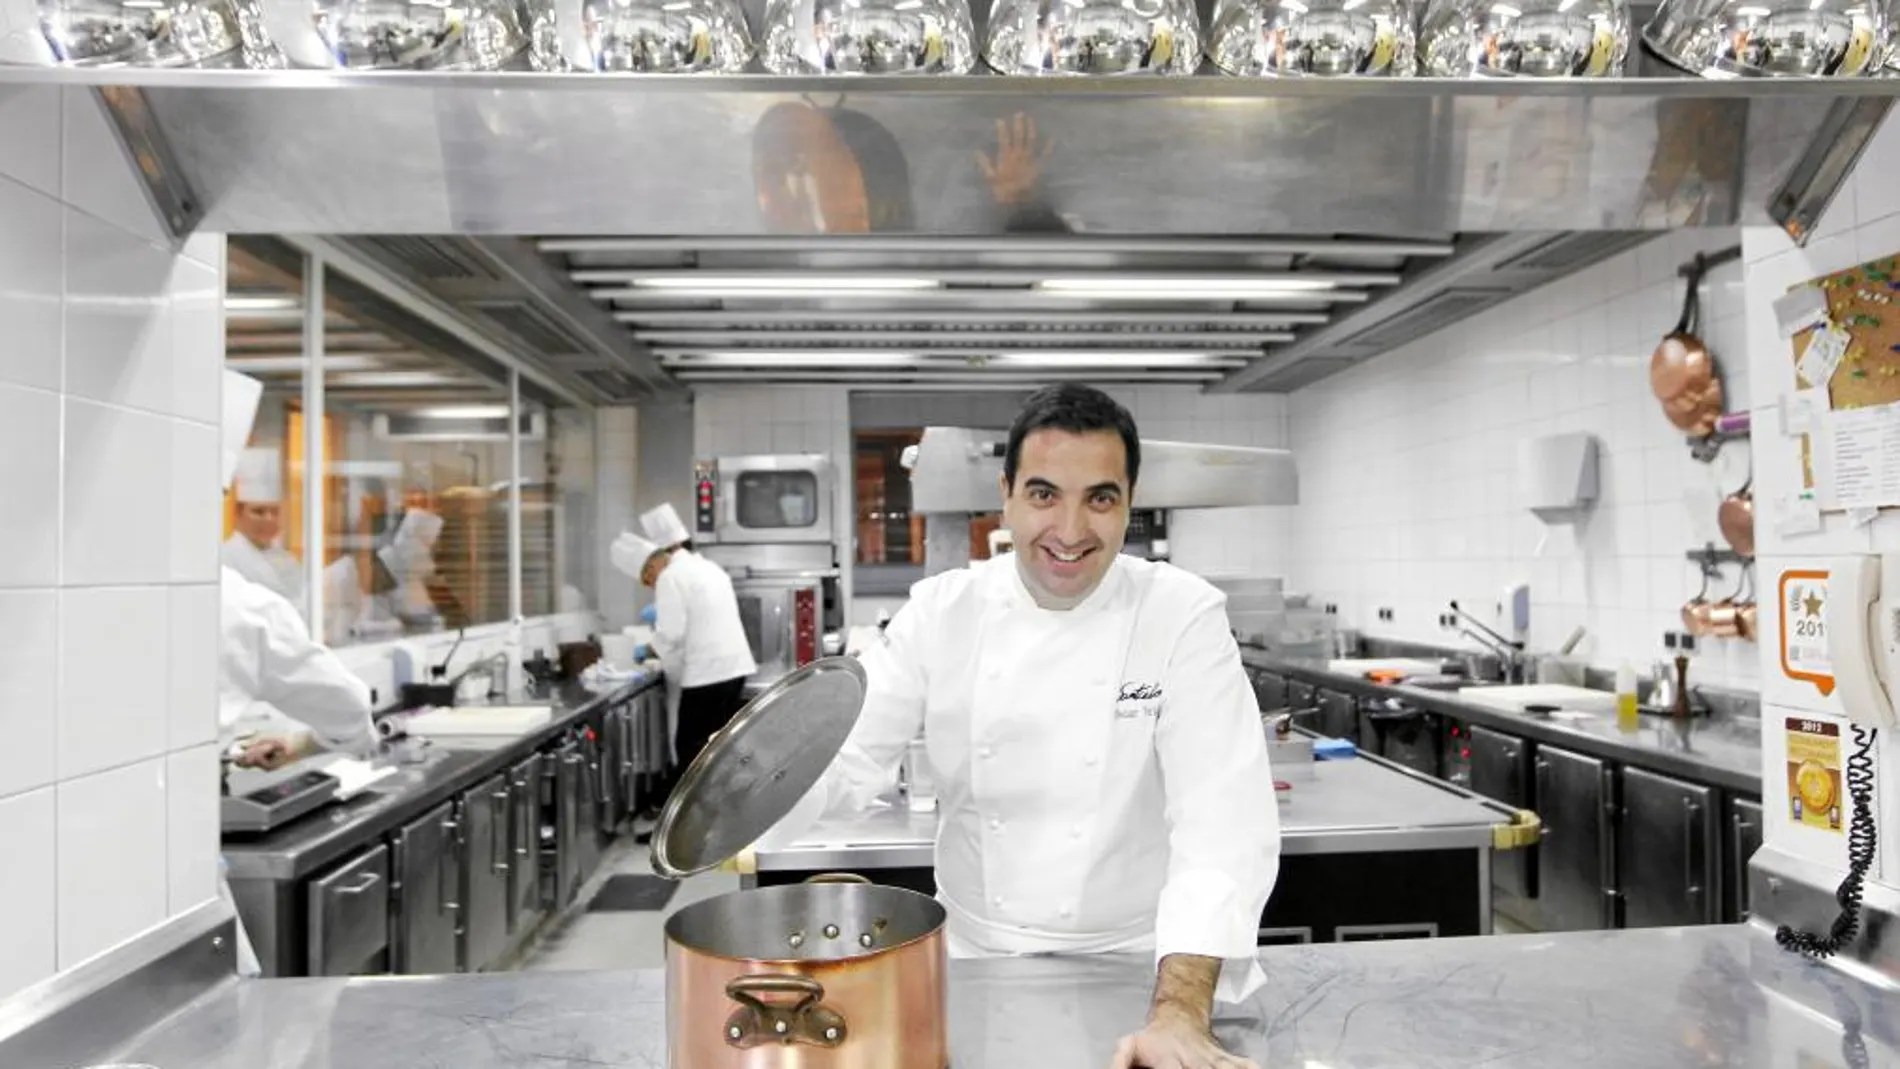 GRAN COCINA El chef, en la cocina de Santceloni, supervisa una de sus creaciones